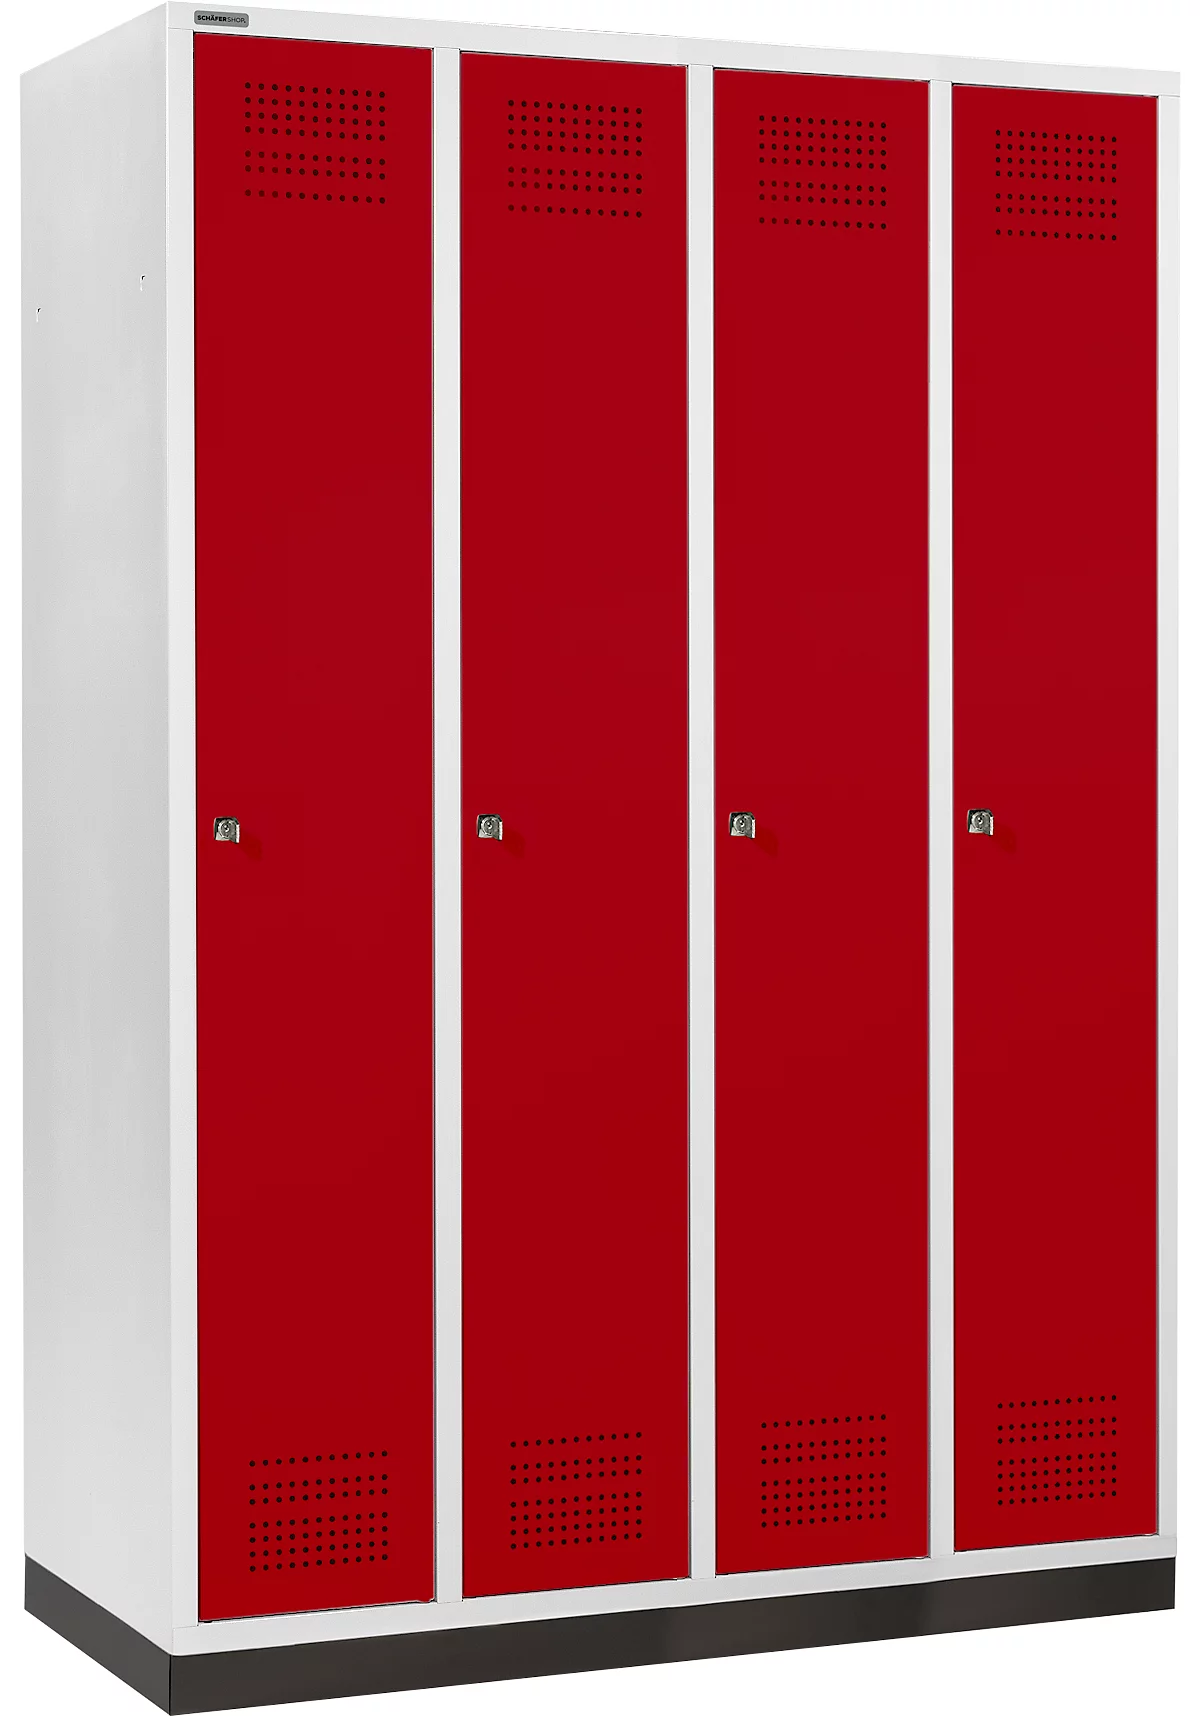 Schäfer Shop Genius Armario para ropa con zócalo, 4 compartimentos, 300 mm de ancho de compartimento, cerradura de cilindro, rojo rubí